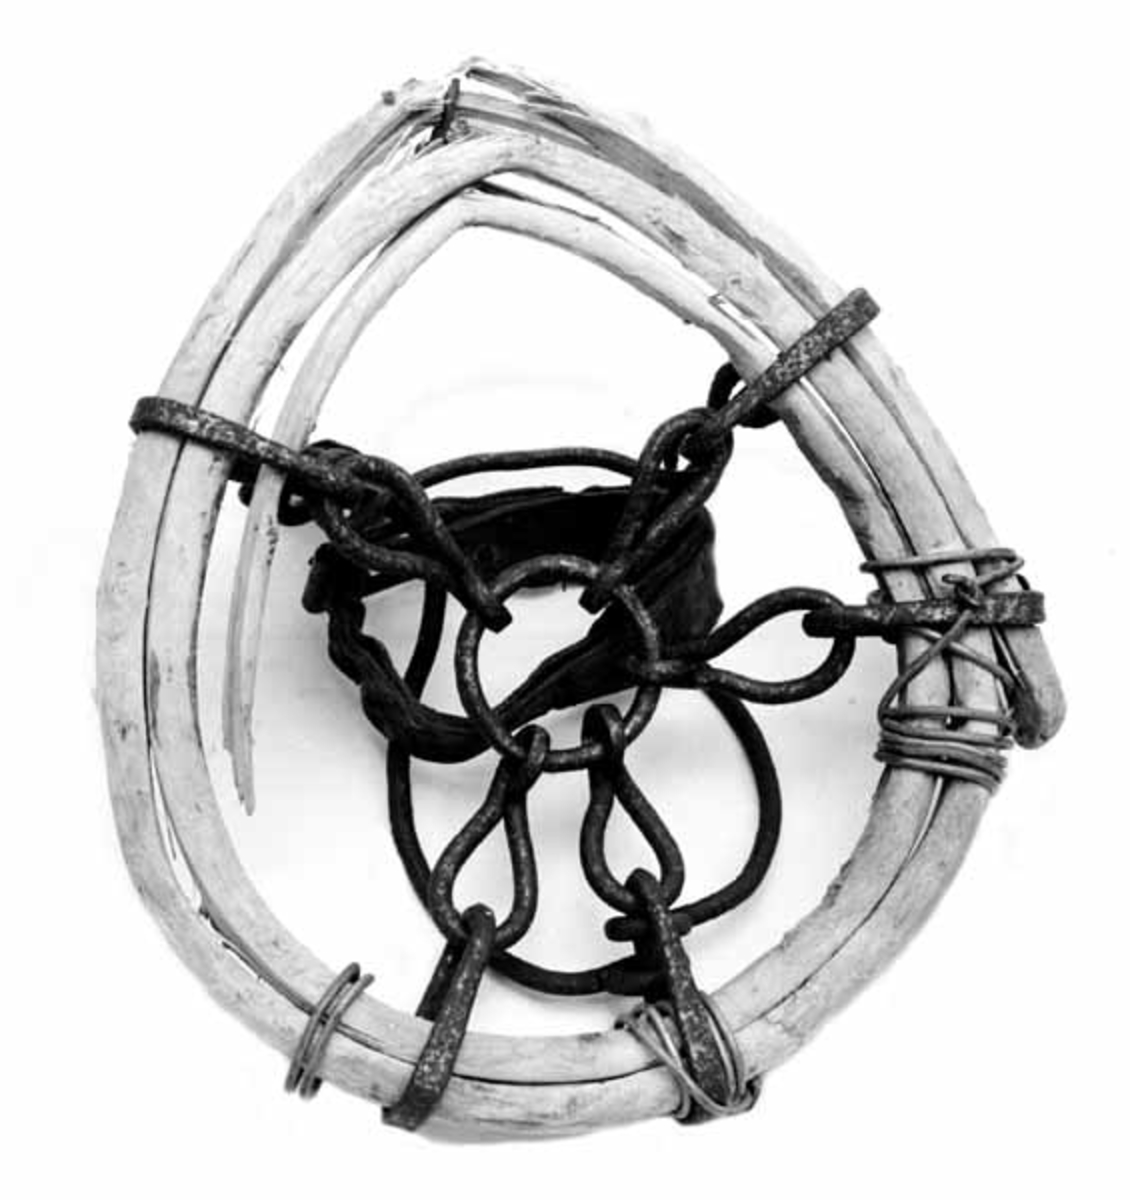 Hestetruge, lagd av tre, jern og lær. Den ytre ringen, som skulle gi hestehoven større bæreevne på sviktende underlag er lagd av en kvist fra et grantre. Kvisten er splittet i to i lengderetningen og viklet til en ring der deler av kvisten overlapper hverandre to, delvis tre ganger. Trekomponentene ble opprinnelig holdt ihop av fem ovale kjettinglekker med forbindelse til en jernring i sentrum av truga. Seinere har man sett seg nødt til å supplere disse sammenføyingene med ståltrådviklinger og en bøyd spiker. Spikeren har gnagd på treringen og ødelagt mange av trefibrene, noe som har resultert i at ringen ikke lenger er like rund som den en gang var.  Oppå truga er det festet to jernbøyler som igjen er forbundet av ei 3,3 centimeter bred lærreim med nålespenne. Disse bøylene og reime har tjent som festeanordninger rundt hestehoven.